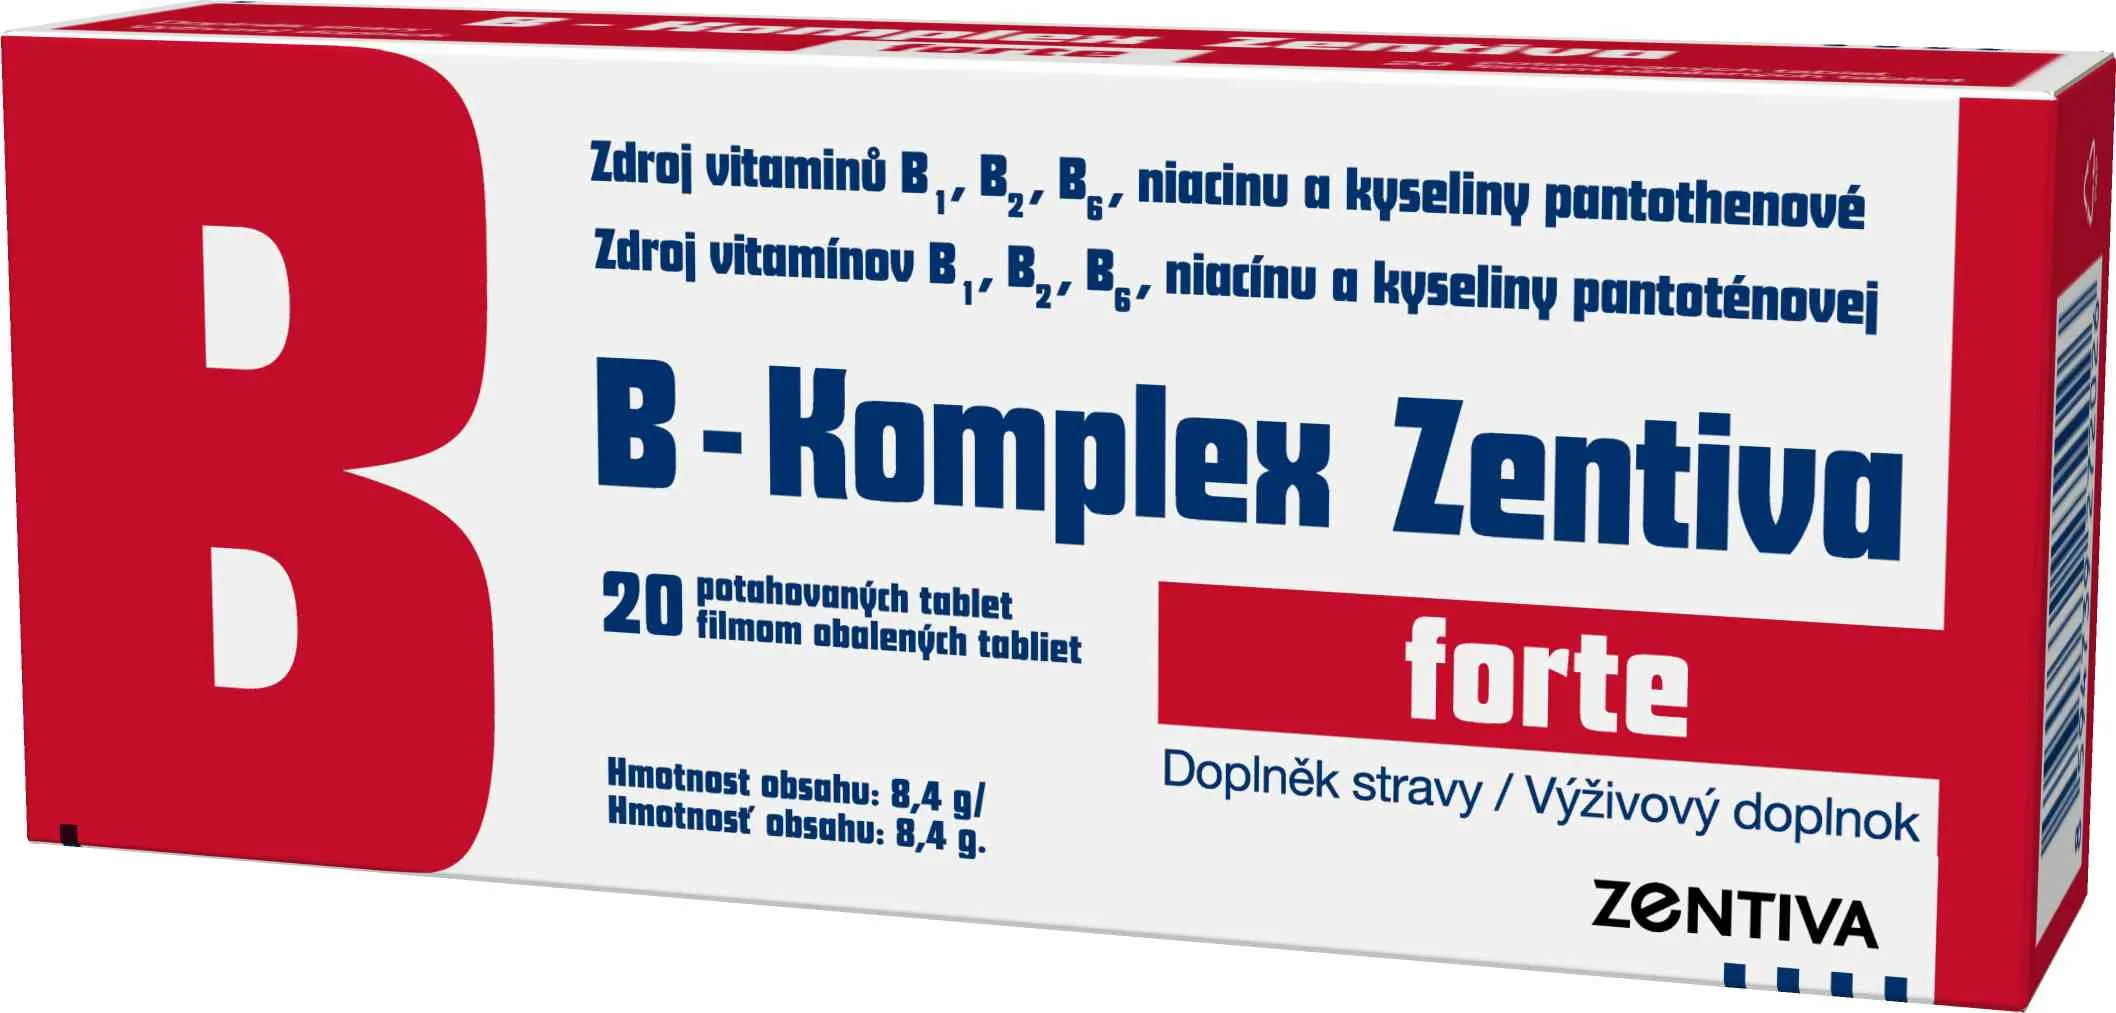 B-Komplex Zentiva forte 20 tbl 1×20 tbl, vitamín B